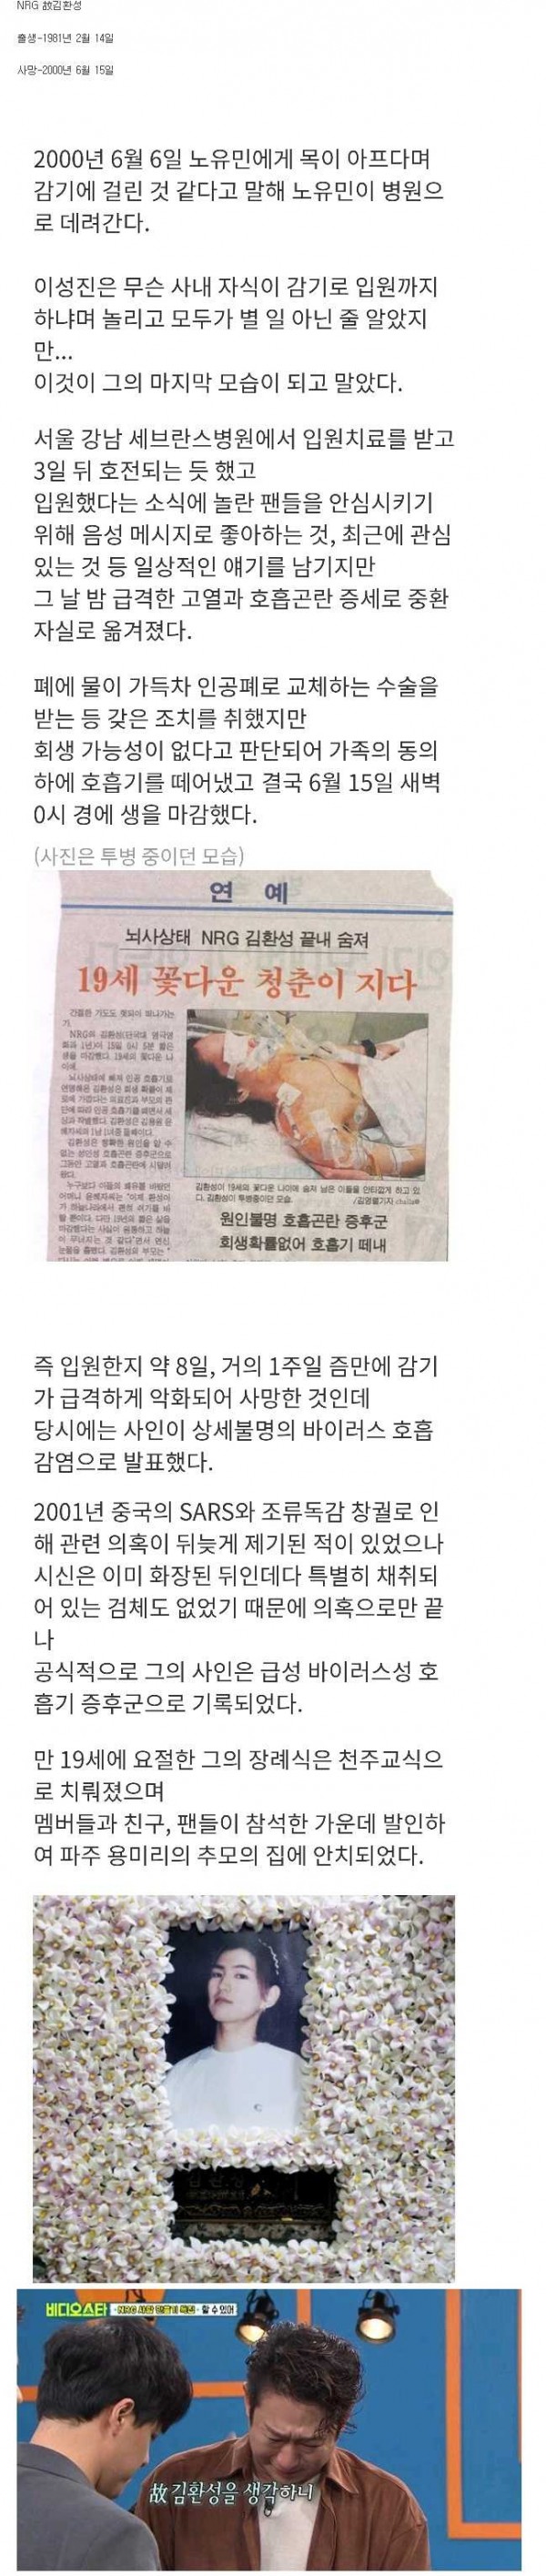 당시 충격이였던 아이돌의 죽음 NRG 김환성